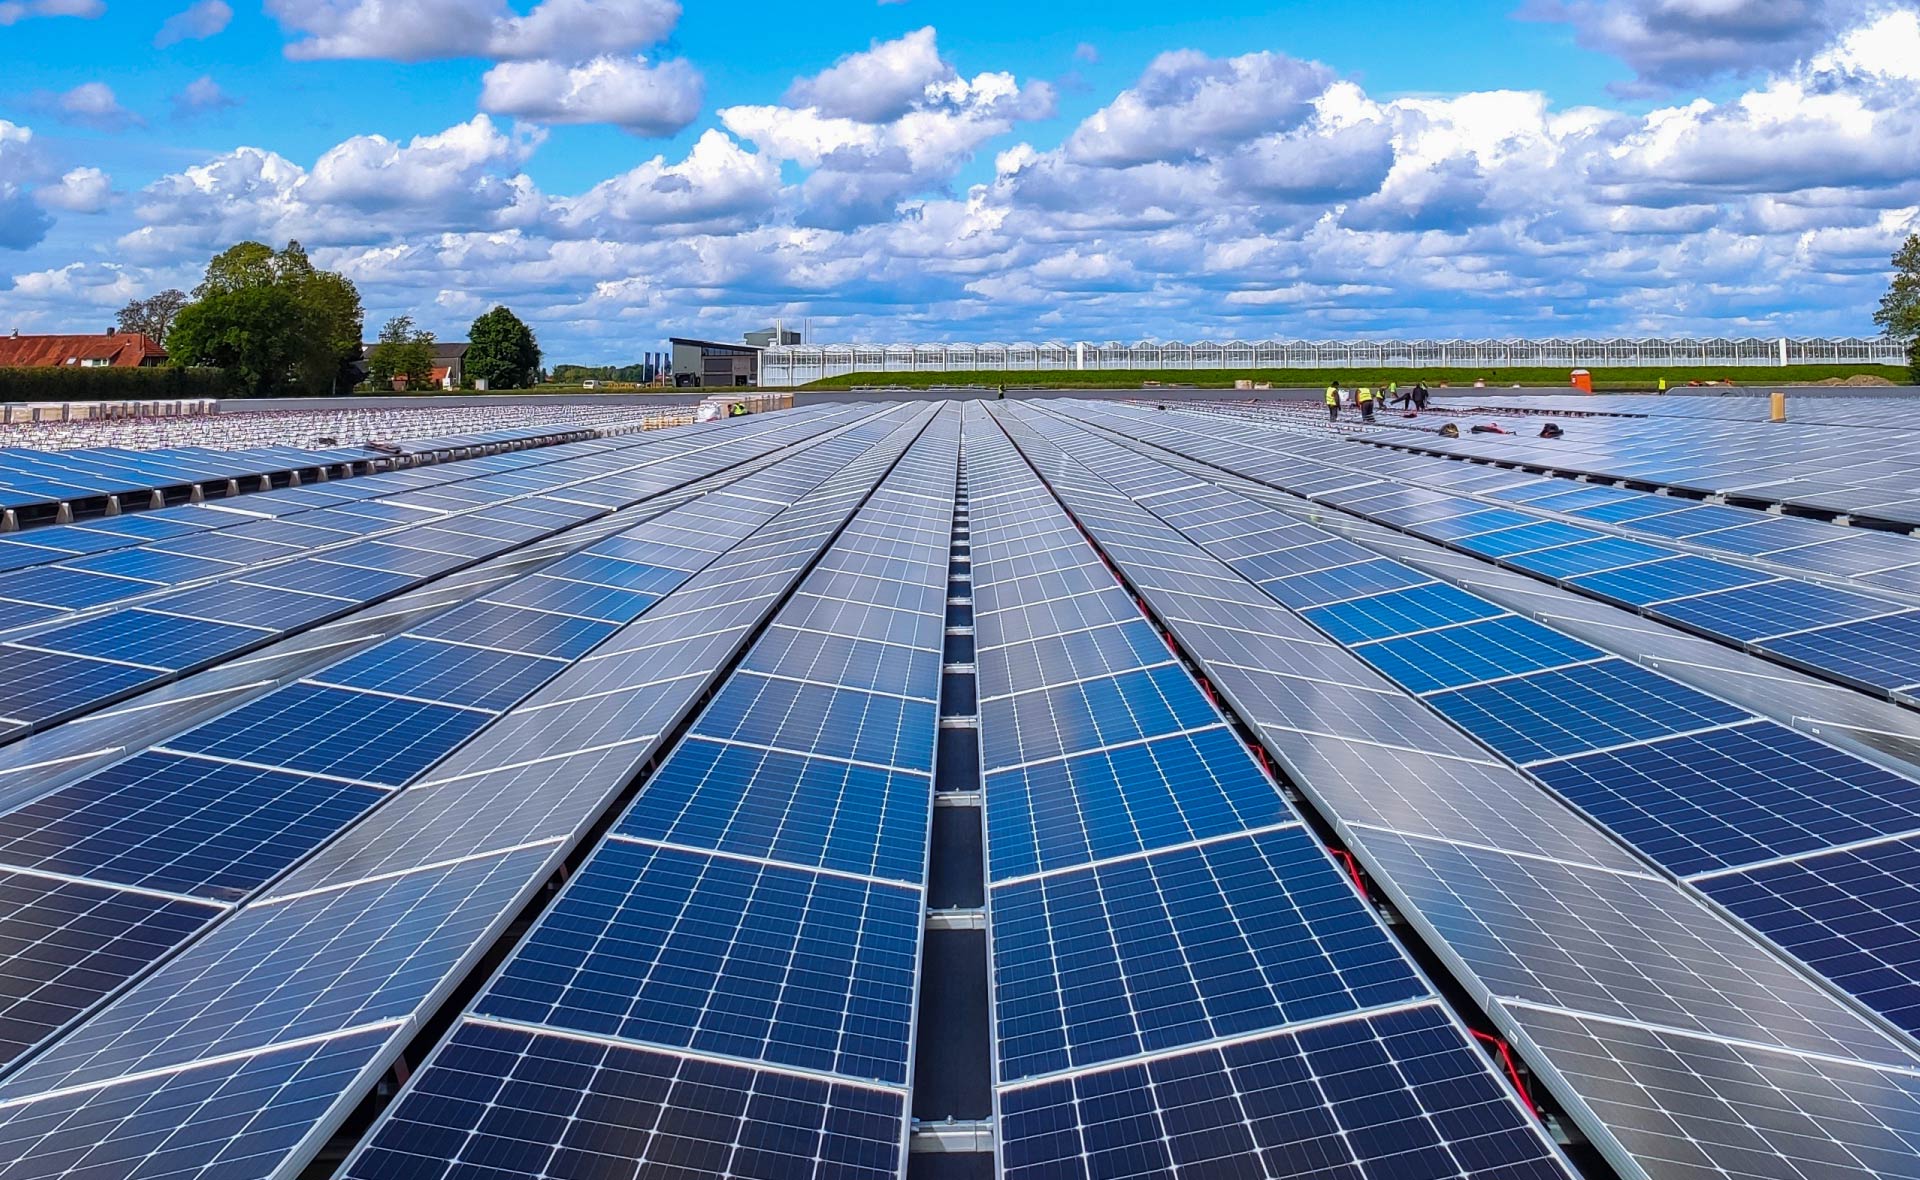 placas_solares-ventajas-energia-sol-sostenibilidad-casas-hogares-eficiencia-energetica